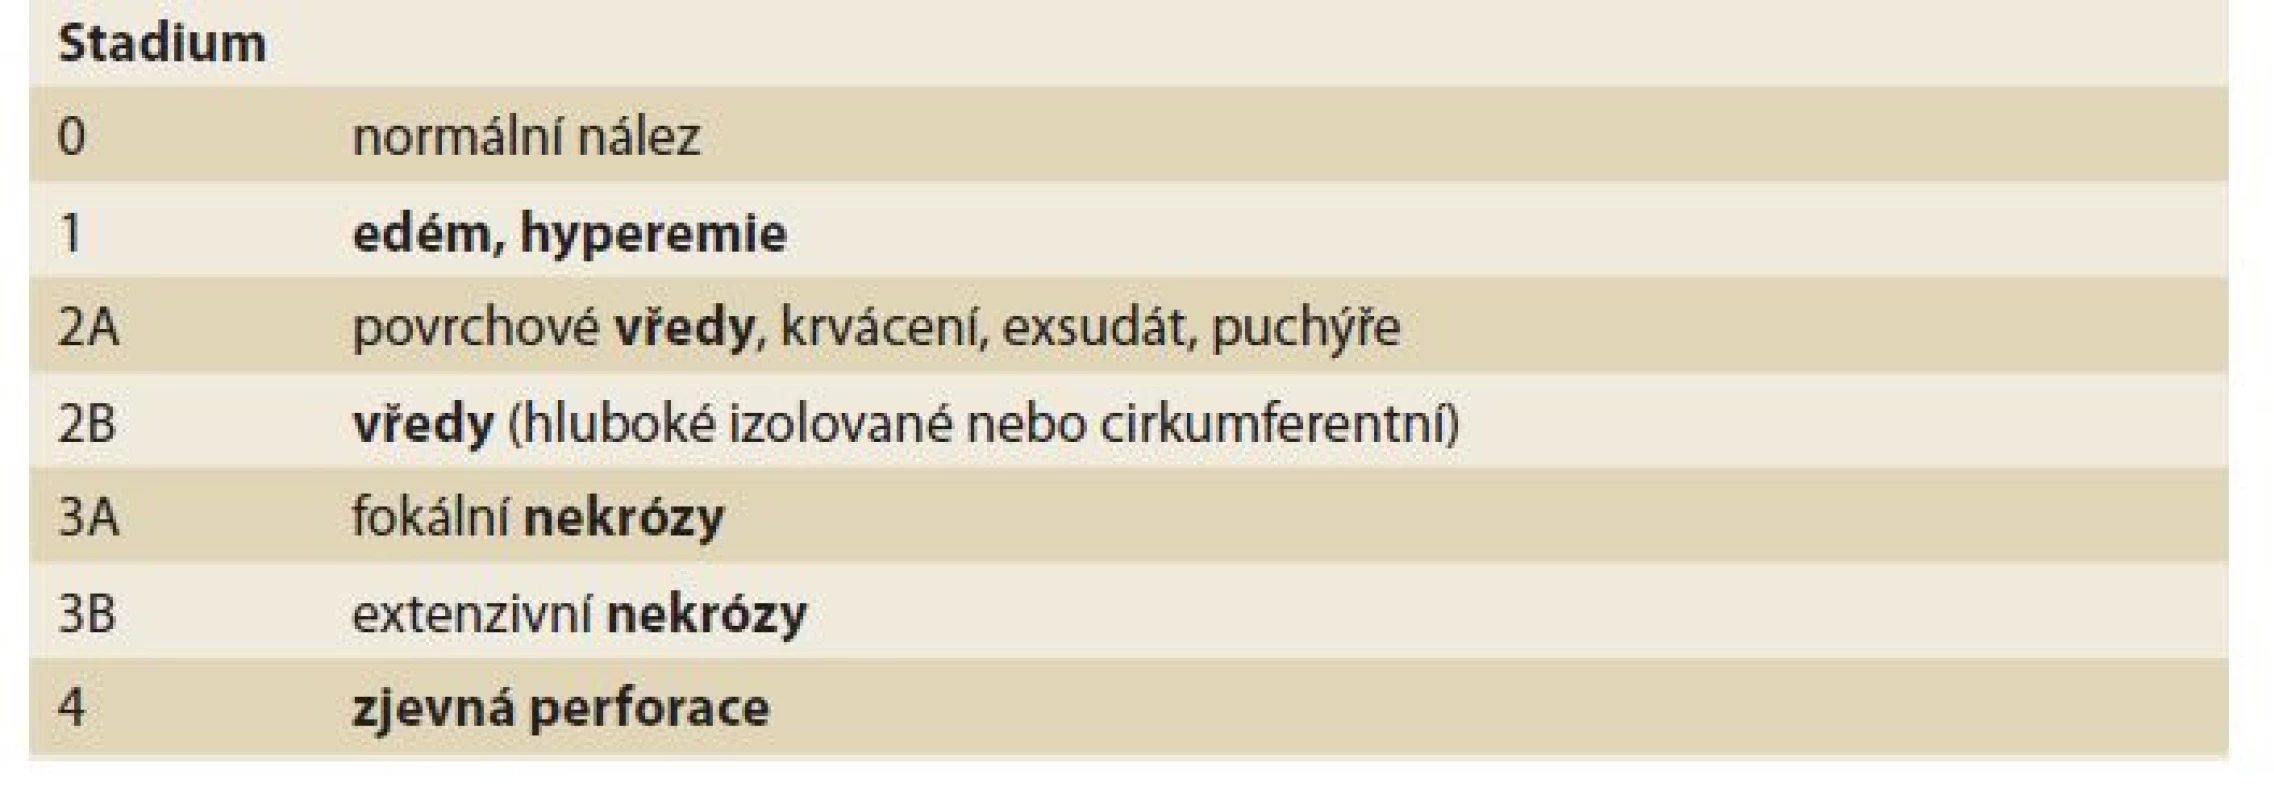 Zargarova klasifikace.<br>
Tab. 9. Zargar‘s classification.